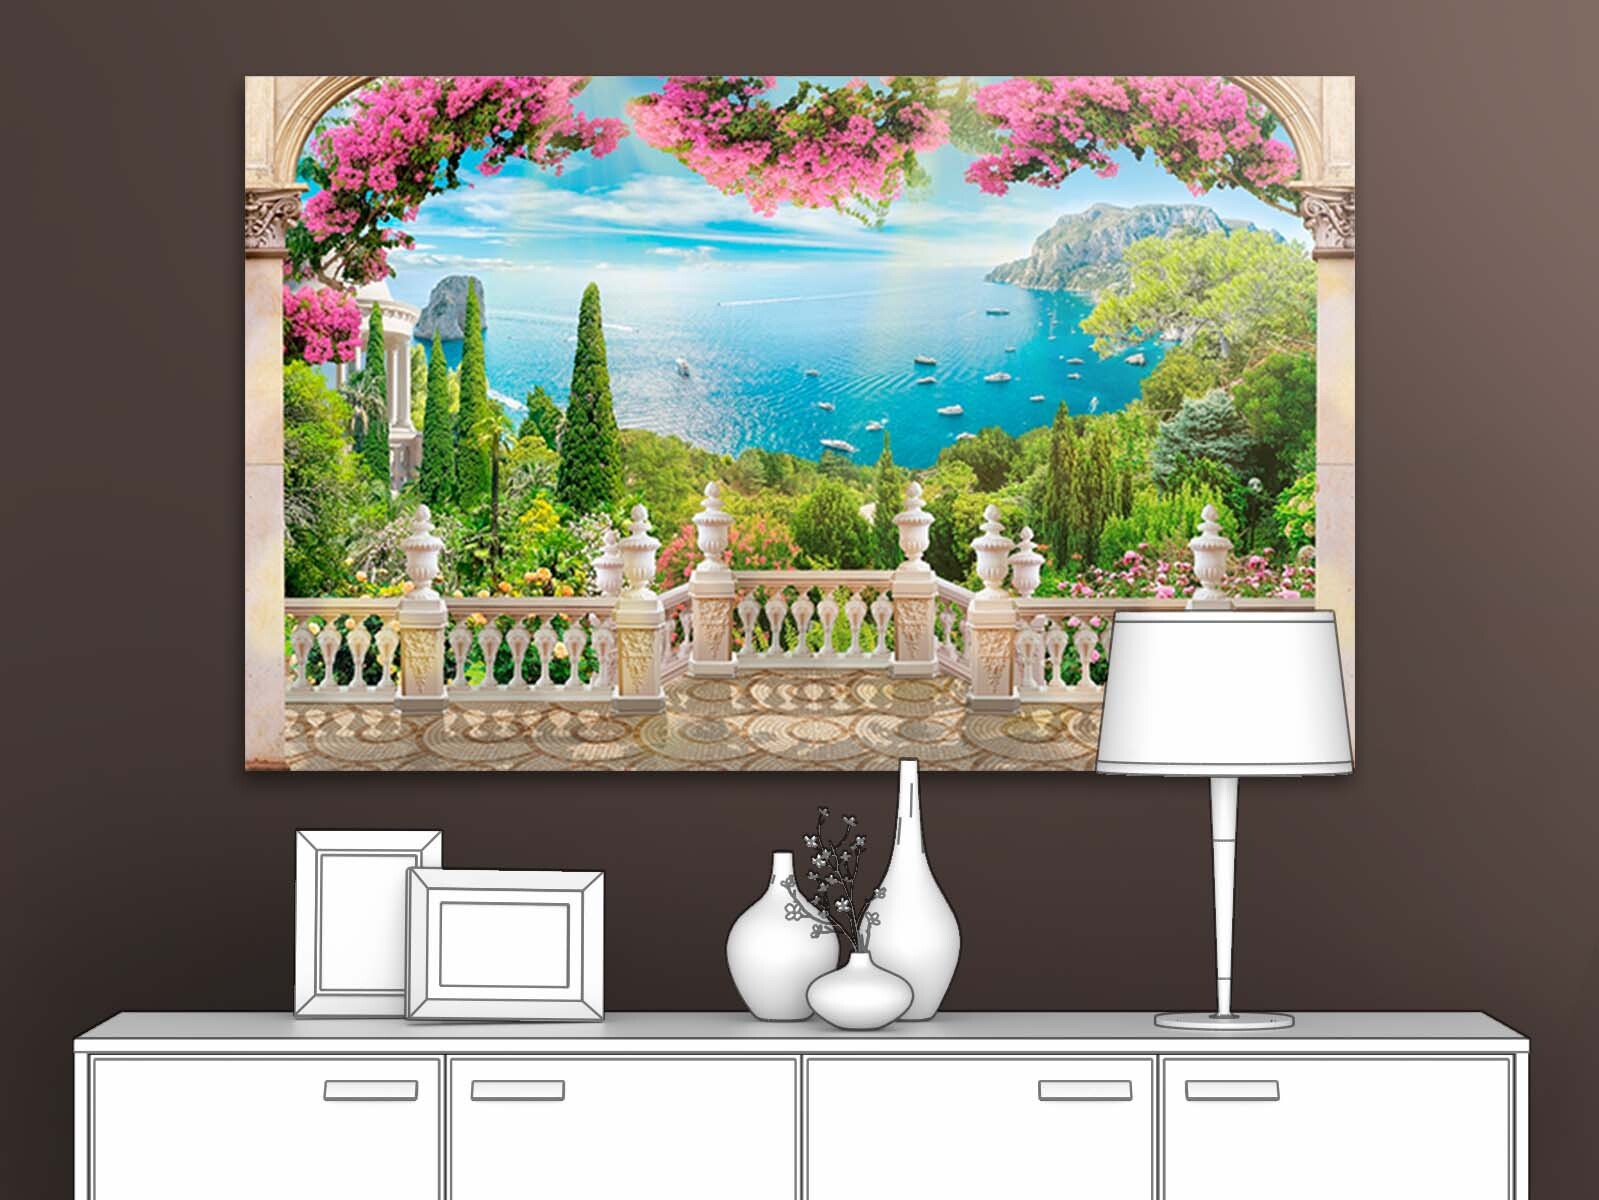 

Картина для интерьера ПЕРВОЕ АТЕЛЬЕ "Терраса с цветами и видом на море" 96х60 см, Терраса с цветами и видом на море